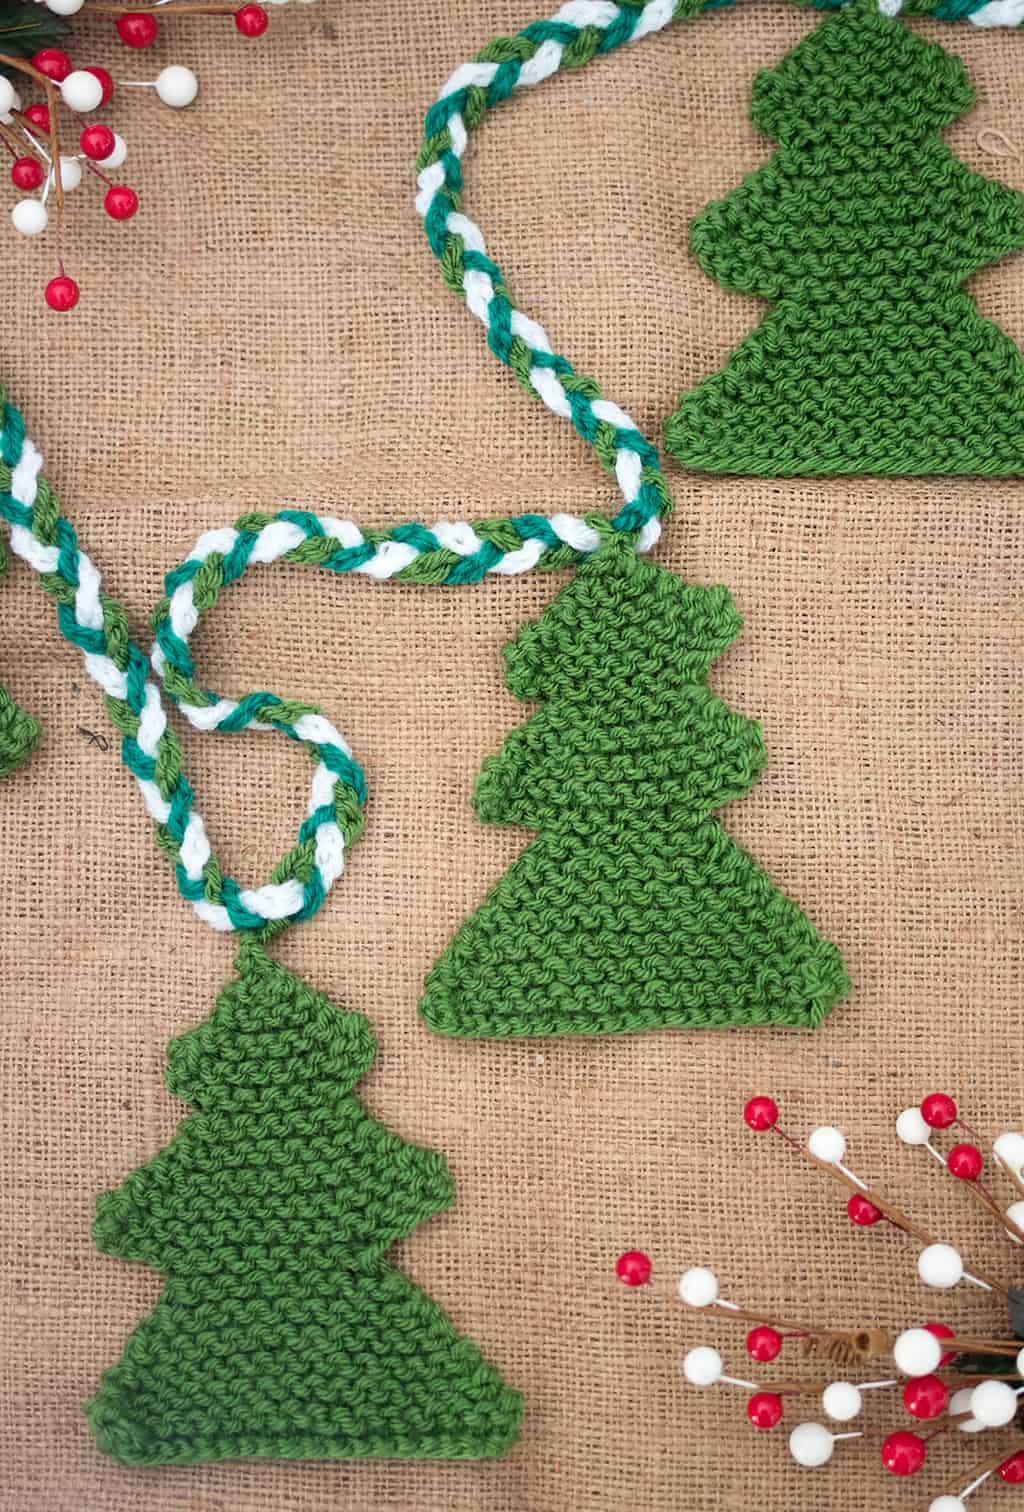 Christmas Tree Knitting Pattern by Gina Michele